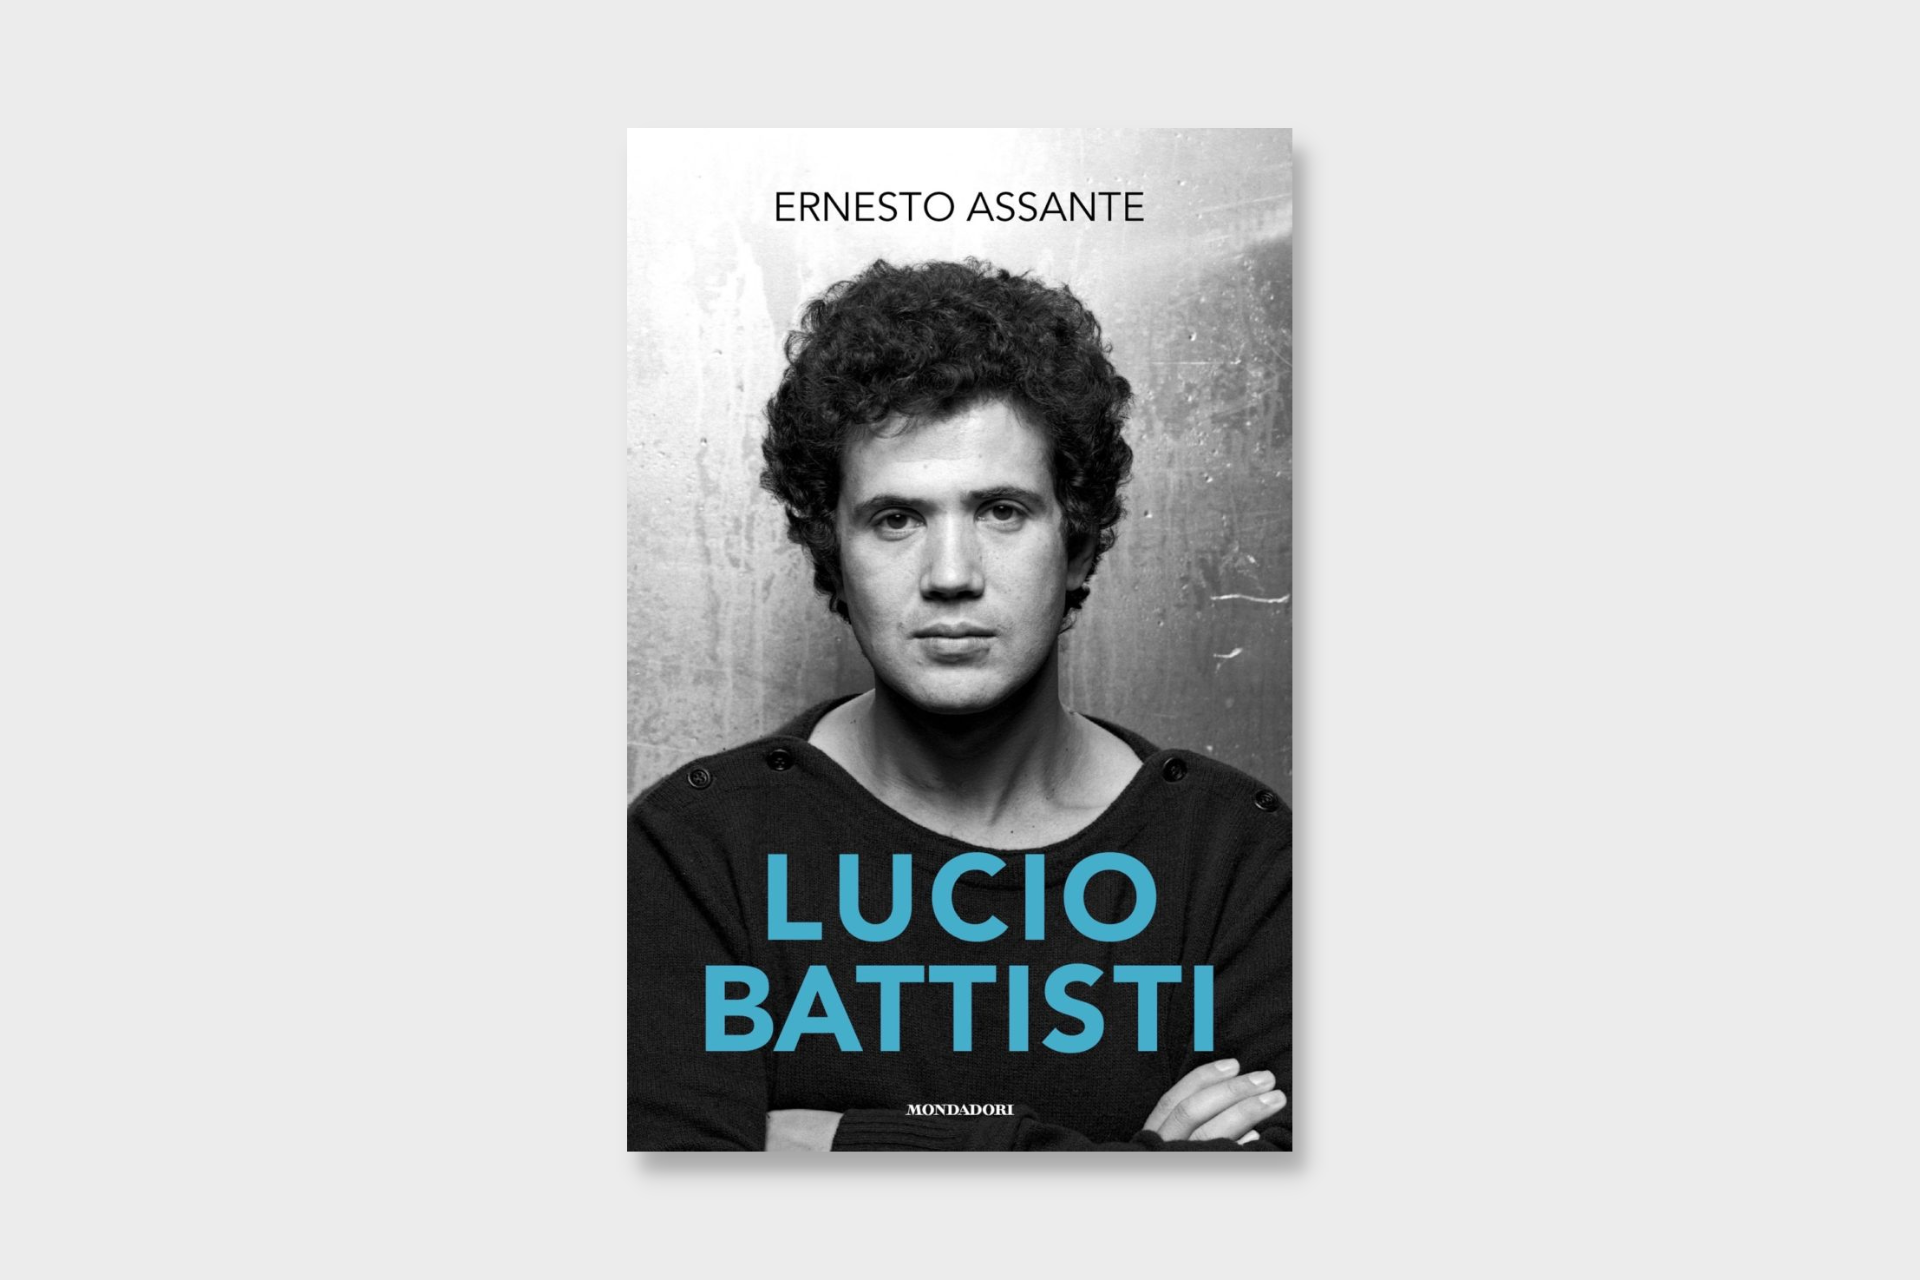 Ernesto Assante pubblica con Mondadori la biografia di Lucio Battisti